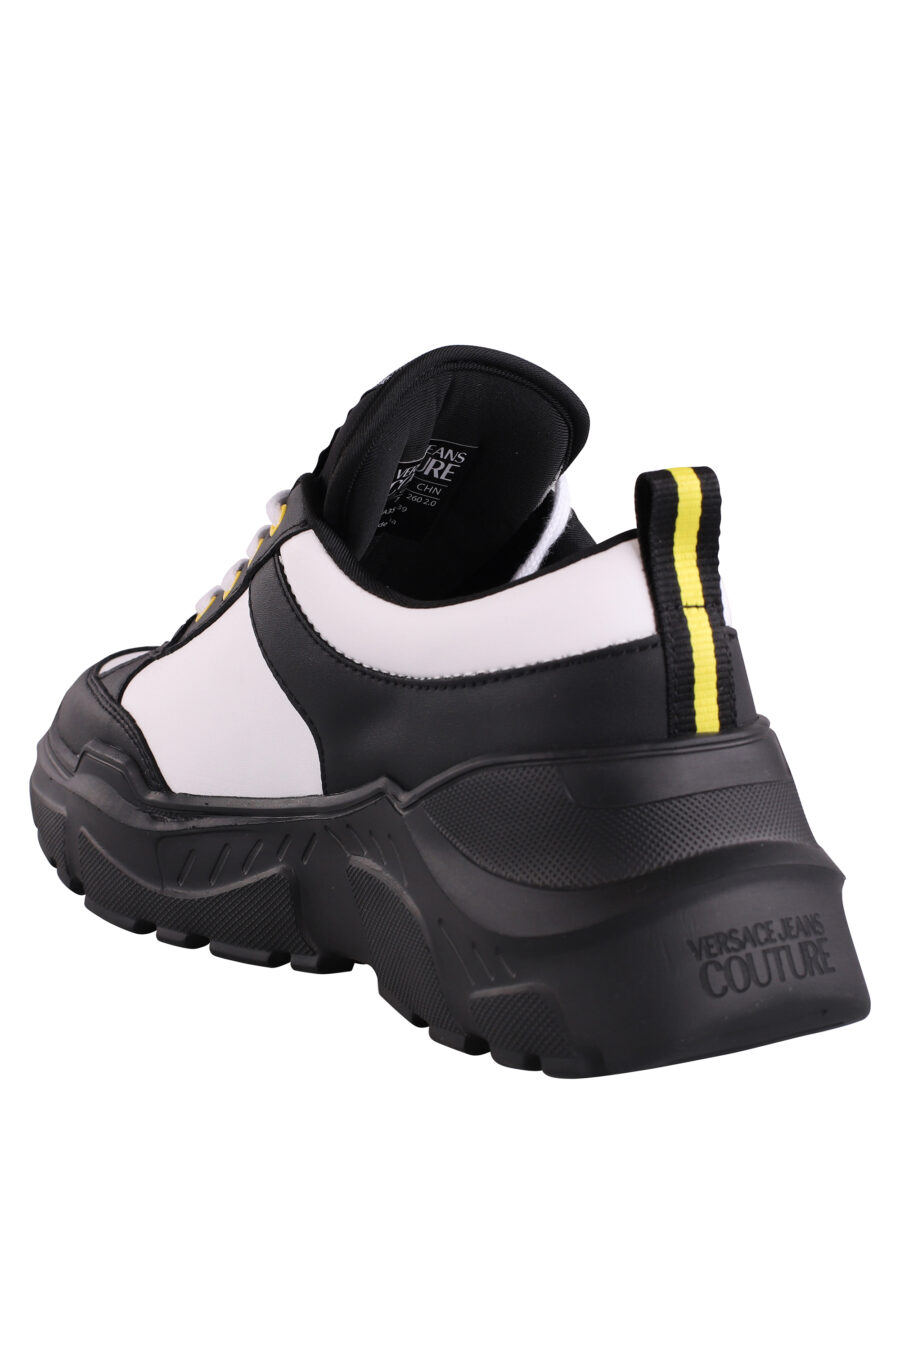 Zapatillas bicolor negras y blancas con logo y detalle amarillo - IMG 9070